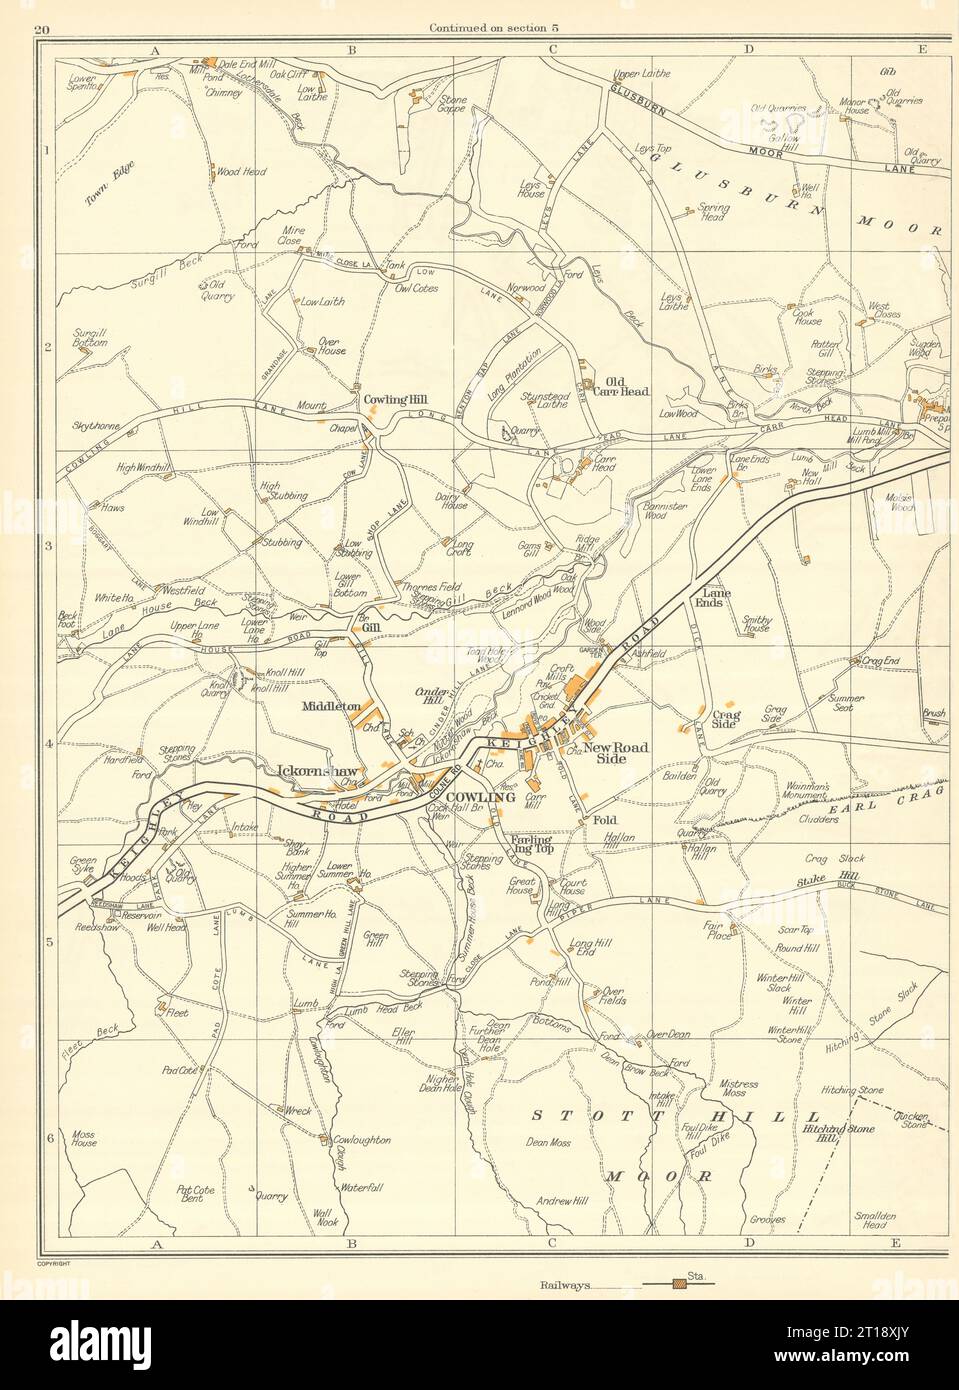 YORKS Cooling Stott Hill Moor Middleton Gill Ickornshaw New Road Seite 1935 Karte Stockfoto